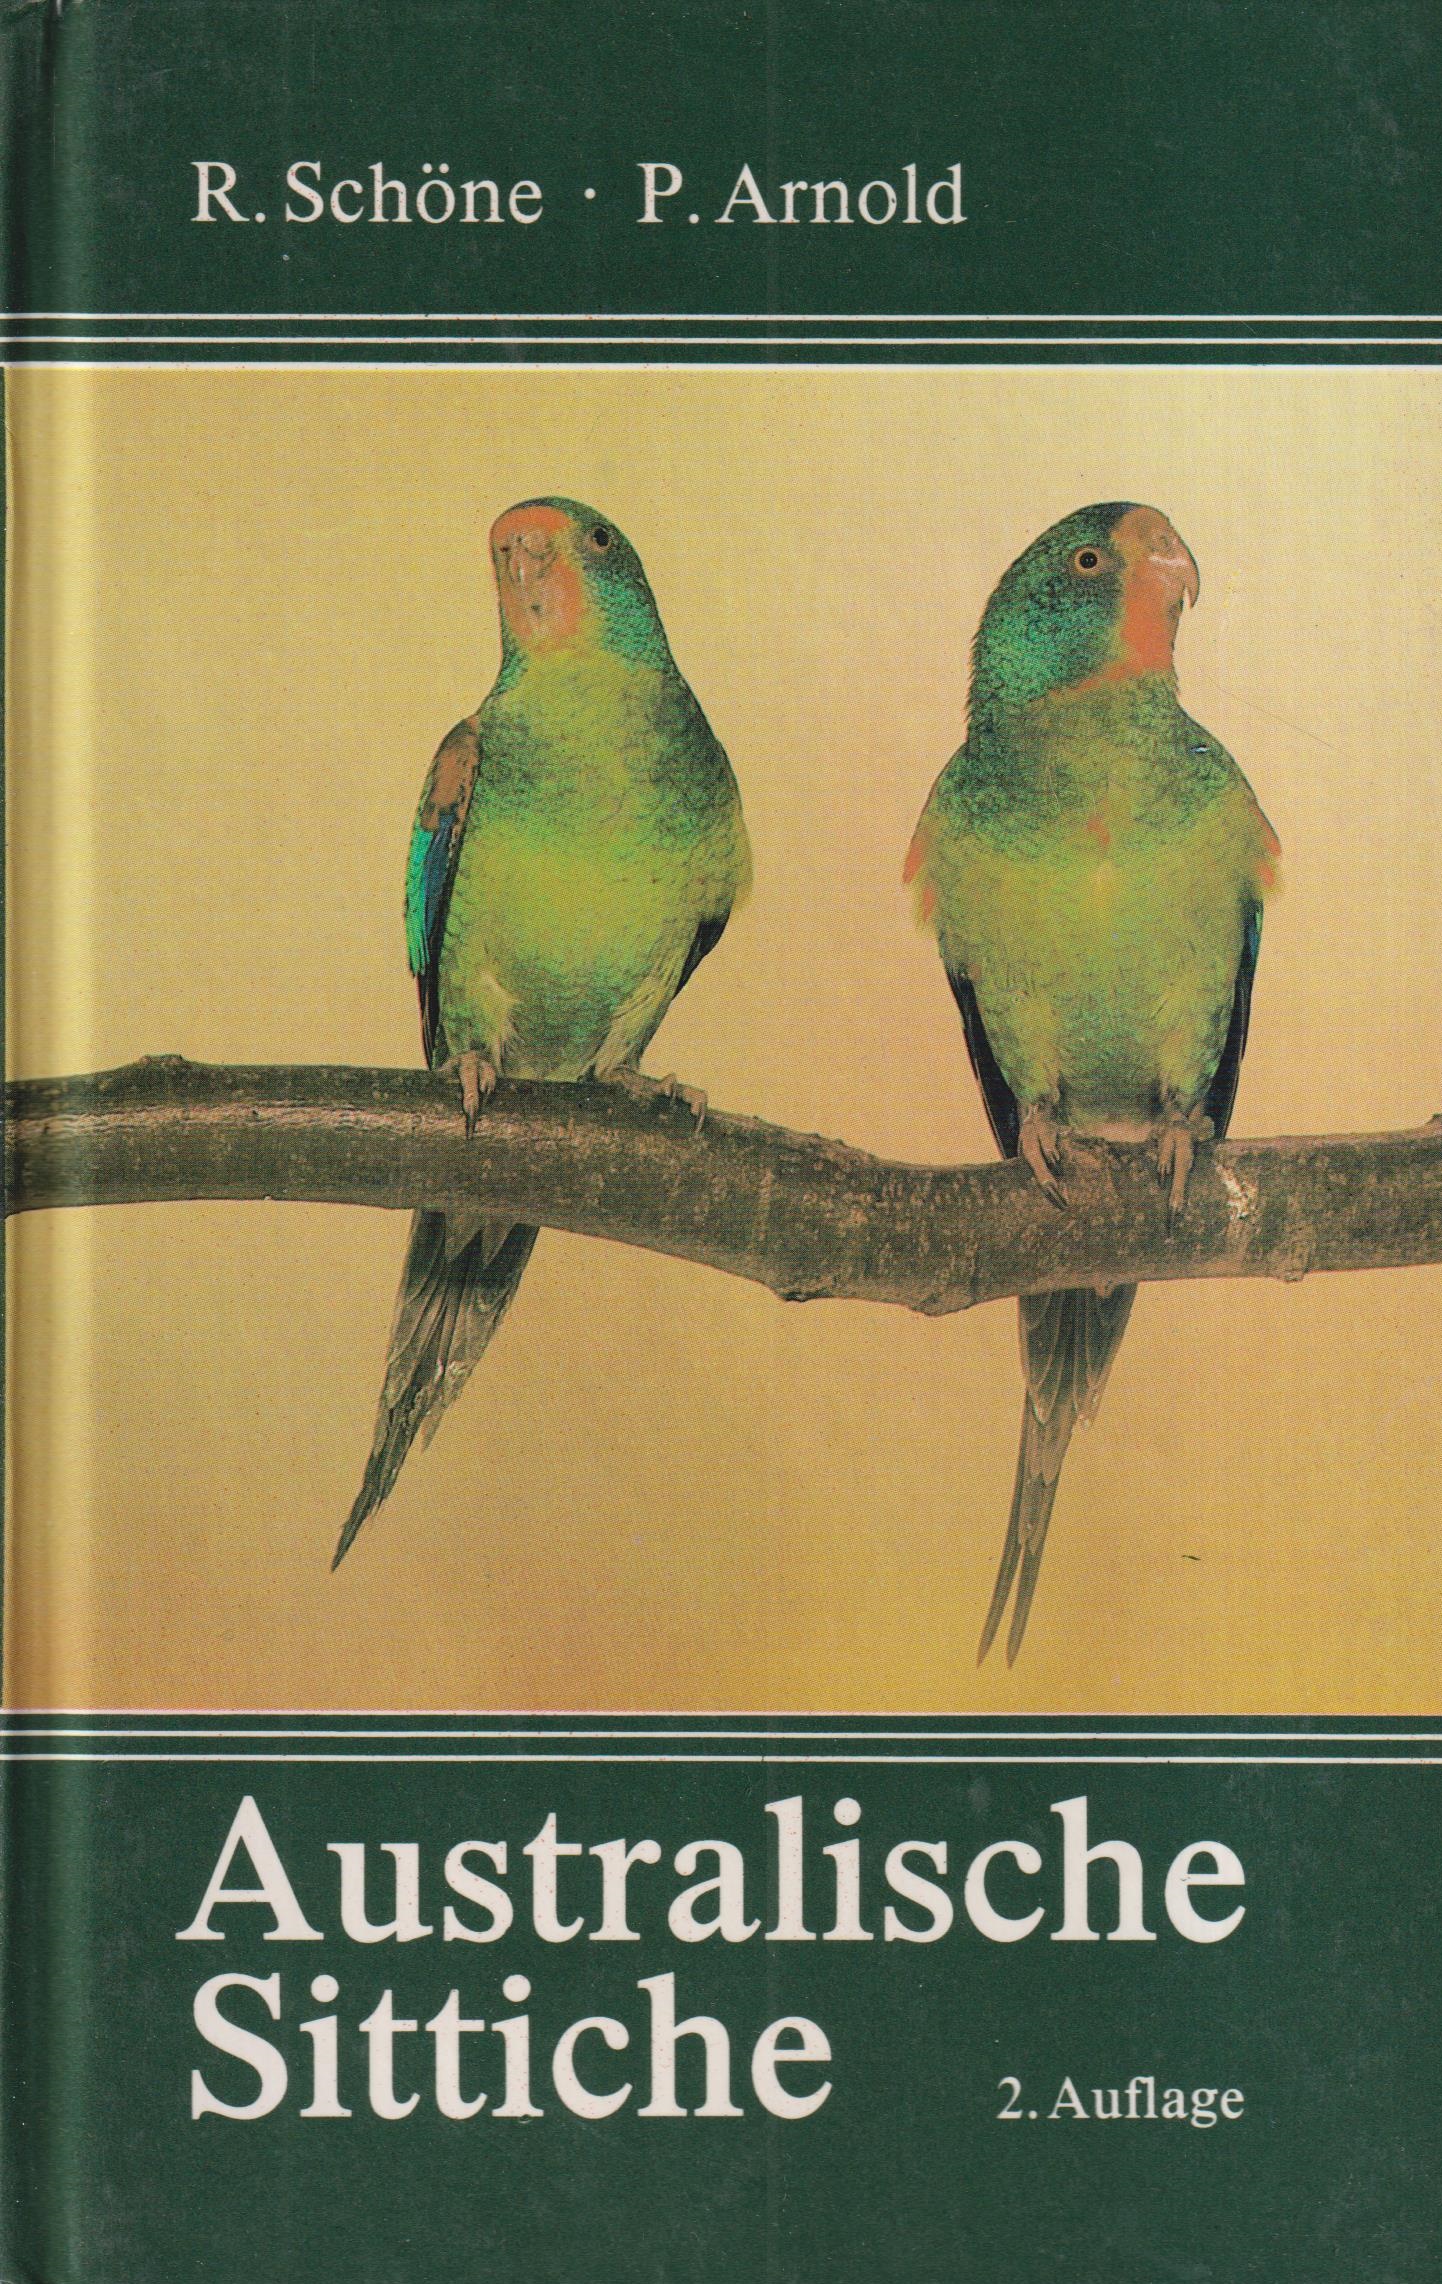 Australische Sittiche - Schöne, R. und P. Arnold